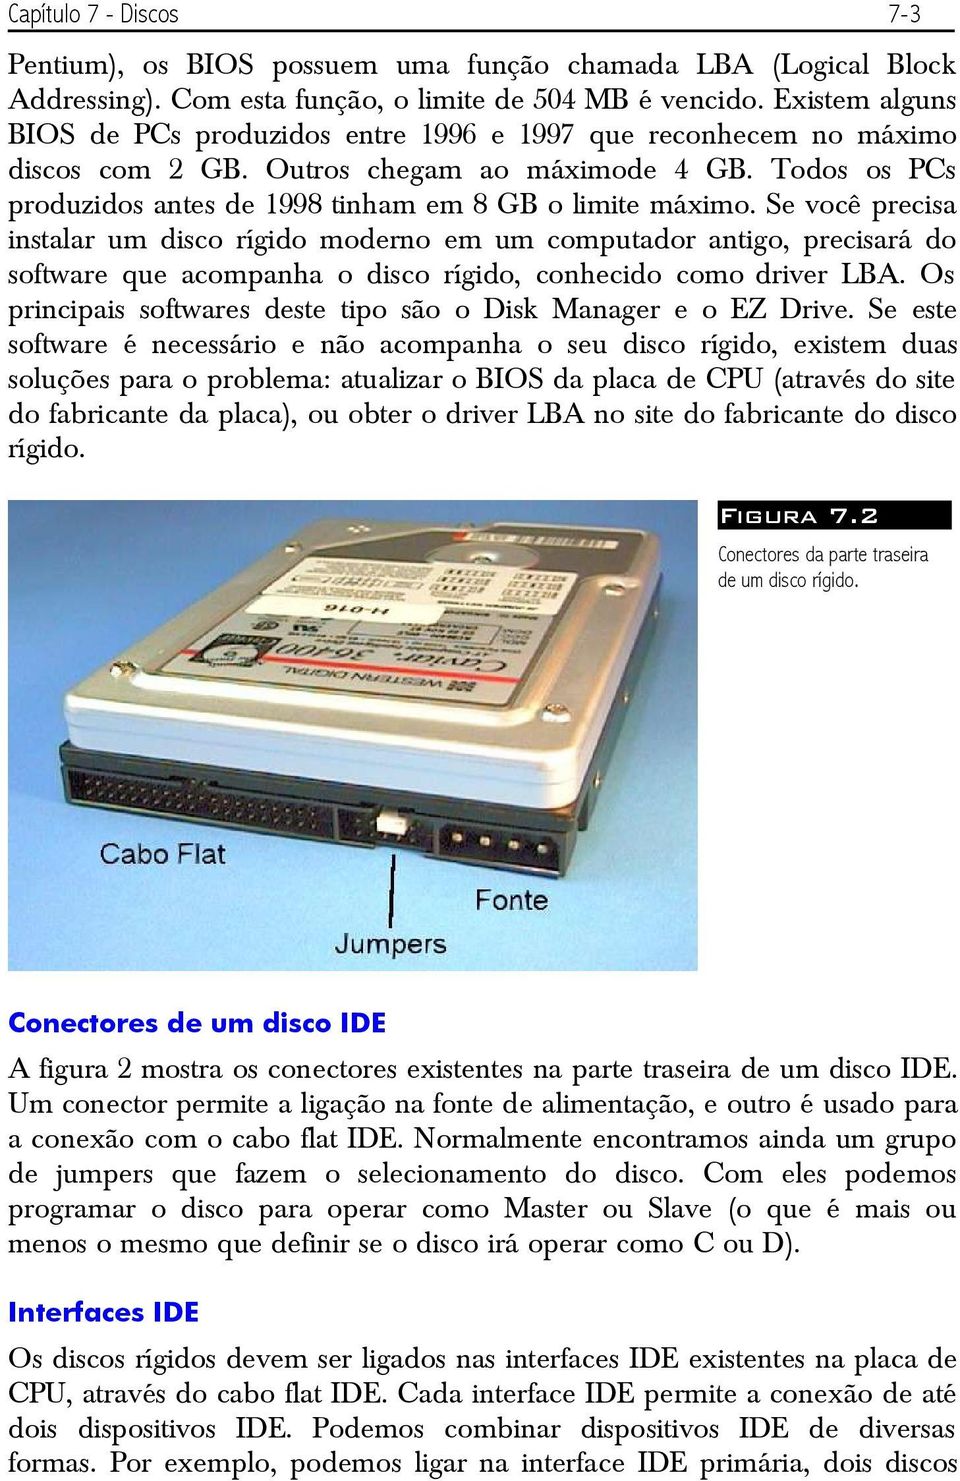 Se você precisa instalar um disco rígido moderno em um computador antigo, precisará do software que acompanha o disco rígido, conhecido como driver LBA.